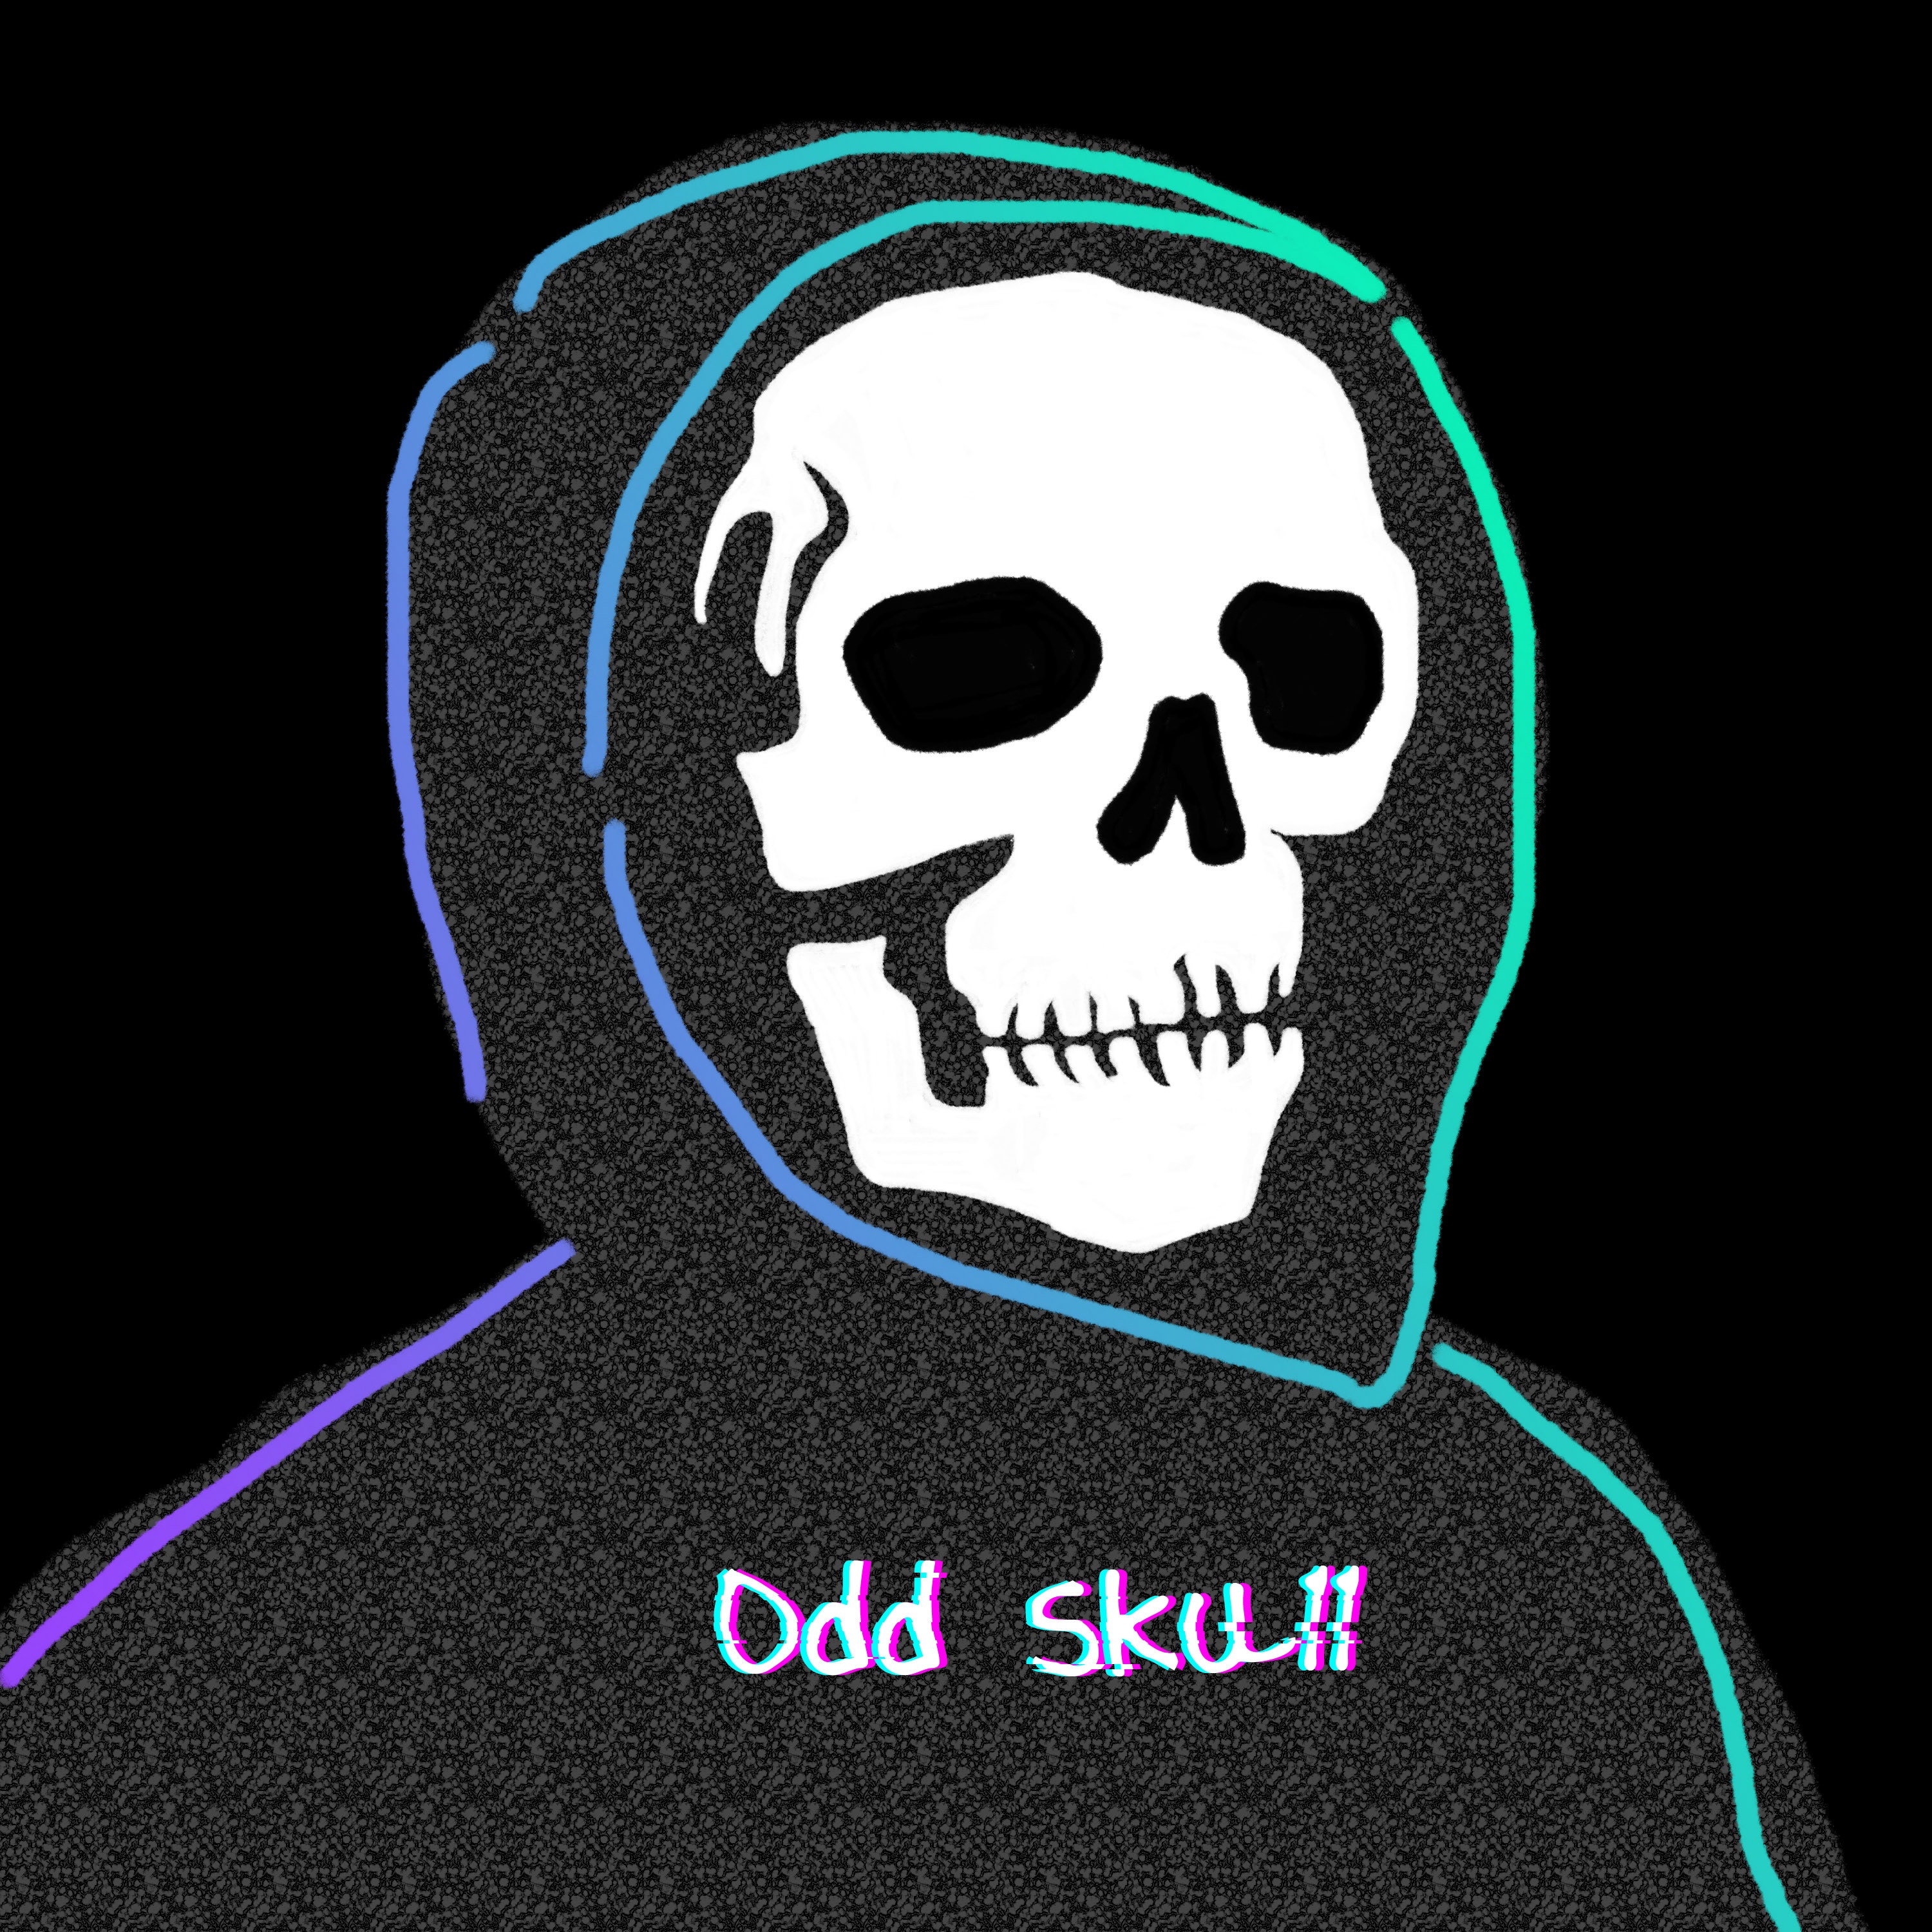 Odd Skull thumbnail